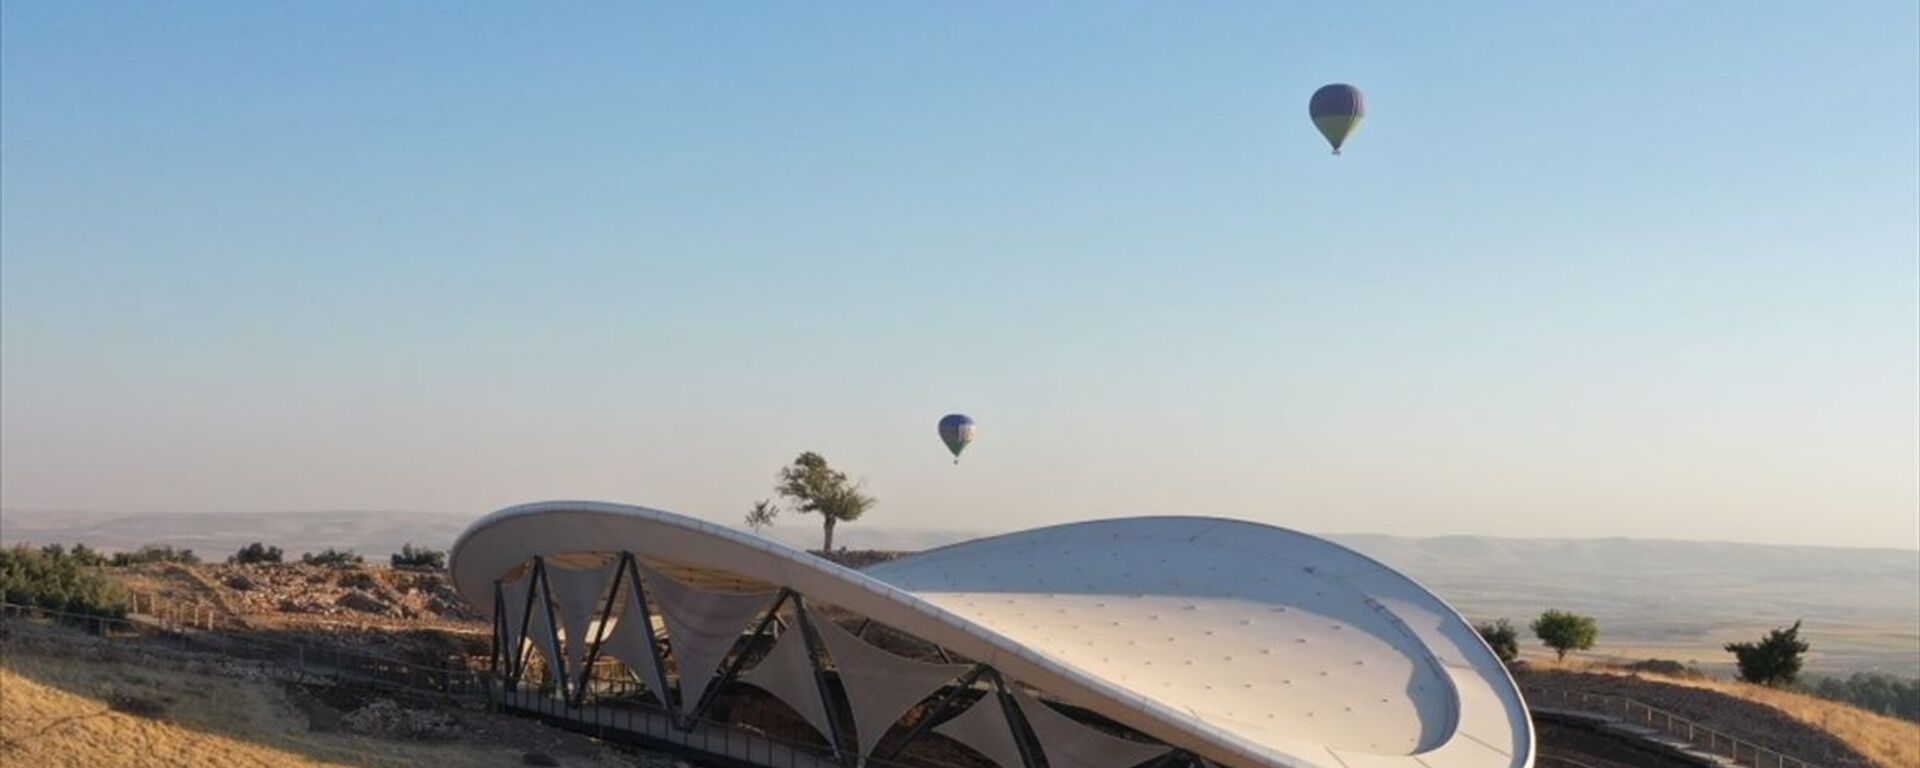 Şanlıurfa'da, UNESCO Dünya Mirası Listesi'nde yer alan ve tarihin sıfır noktası olarak nitelendirilen Göbeklitepe'de, sıcak hava balonuyla resmi uçuşlar başladı. - Sputnik Türkiye, 1920, 08.09.2021